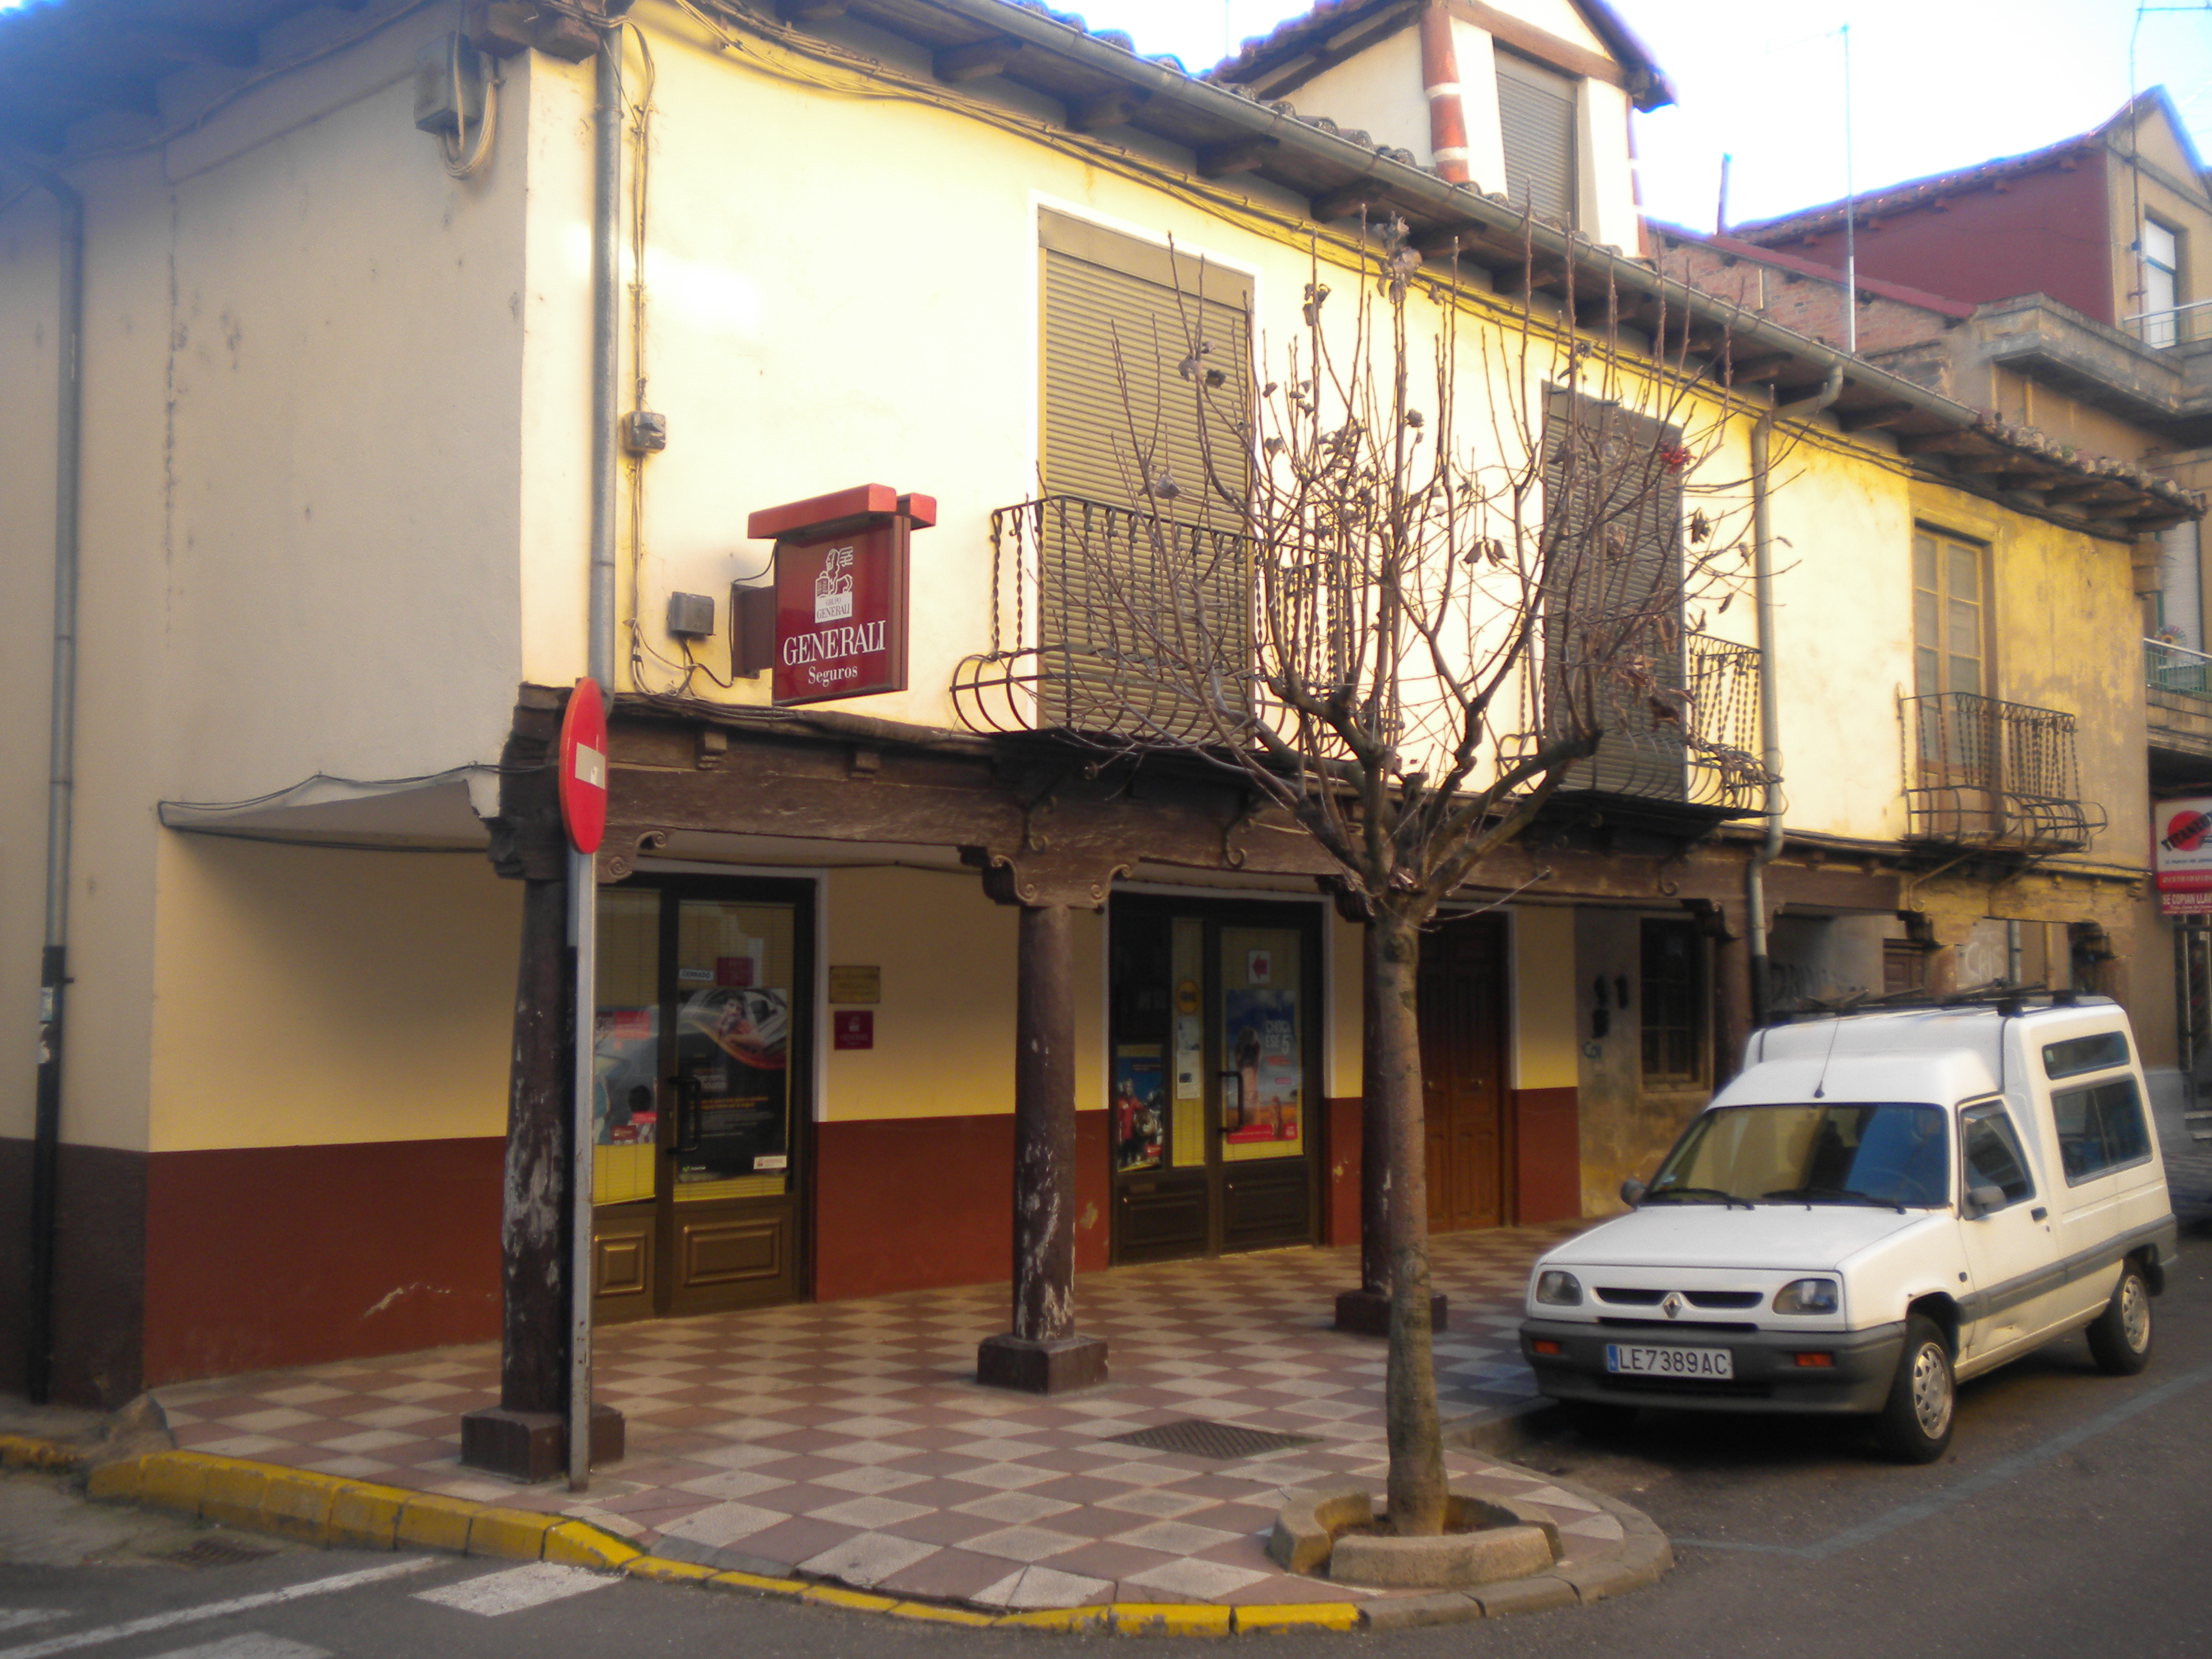 Arquitectura tradicional en La Bañeza